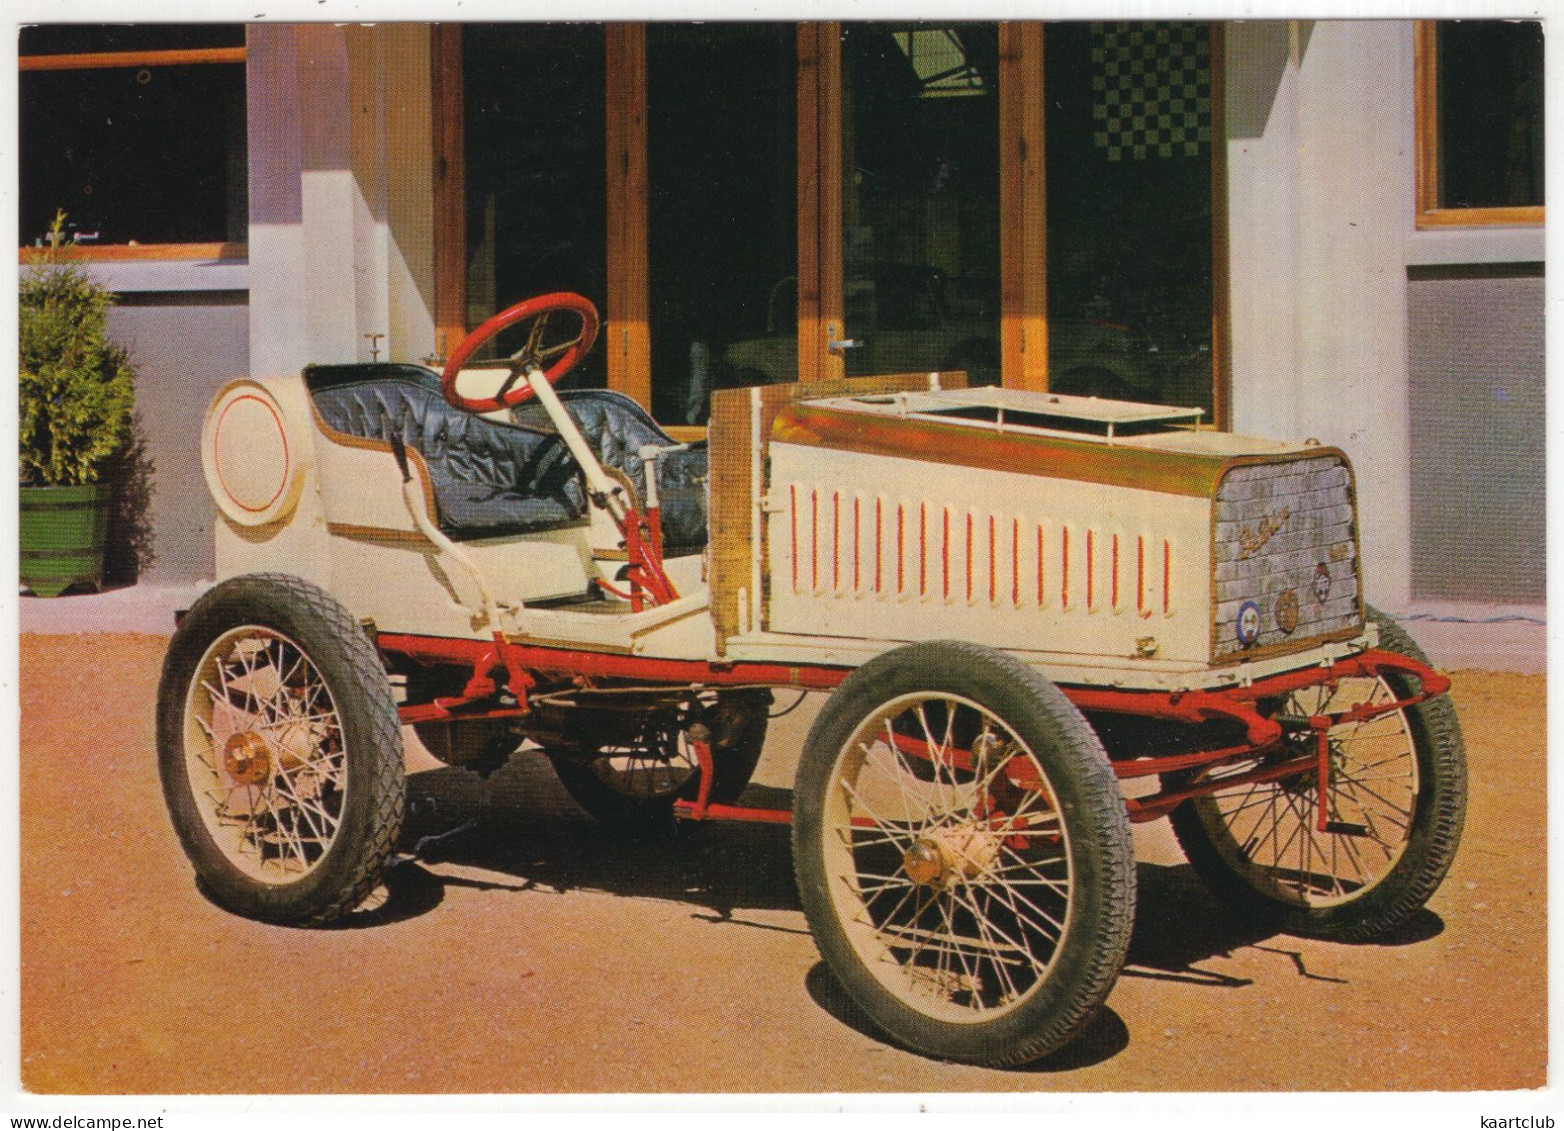 DE DION BOUTON COURSE 1902 - 2 Cylindres - Participé à La Course Paris - Madrid 1902 - (France) - Passenger Cars